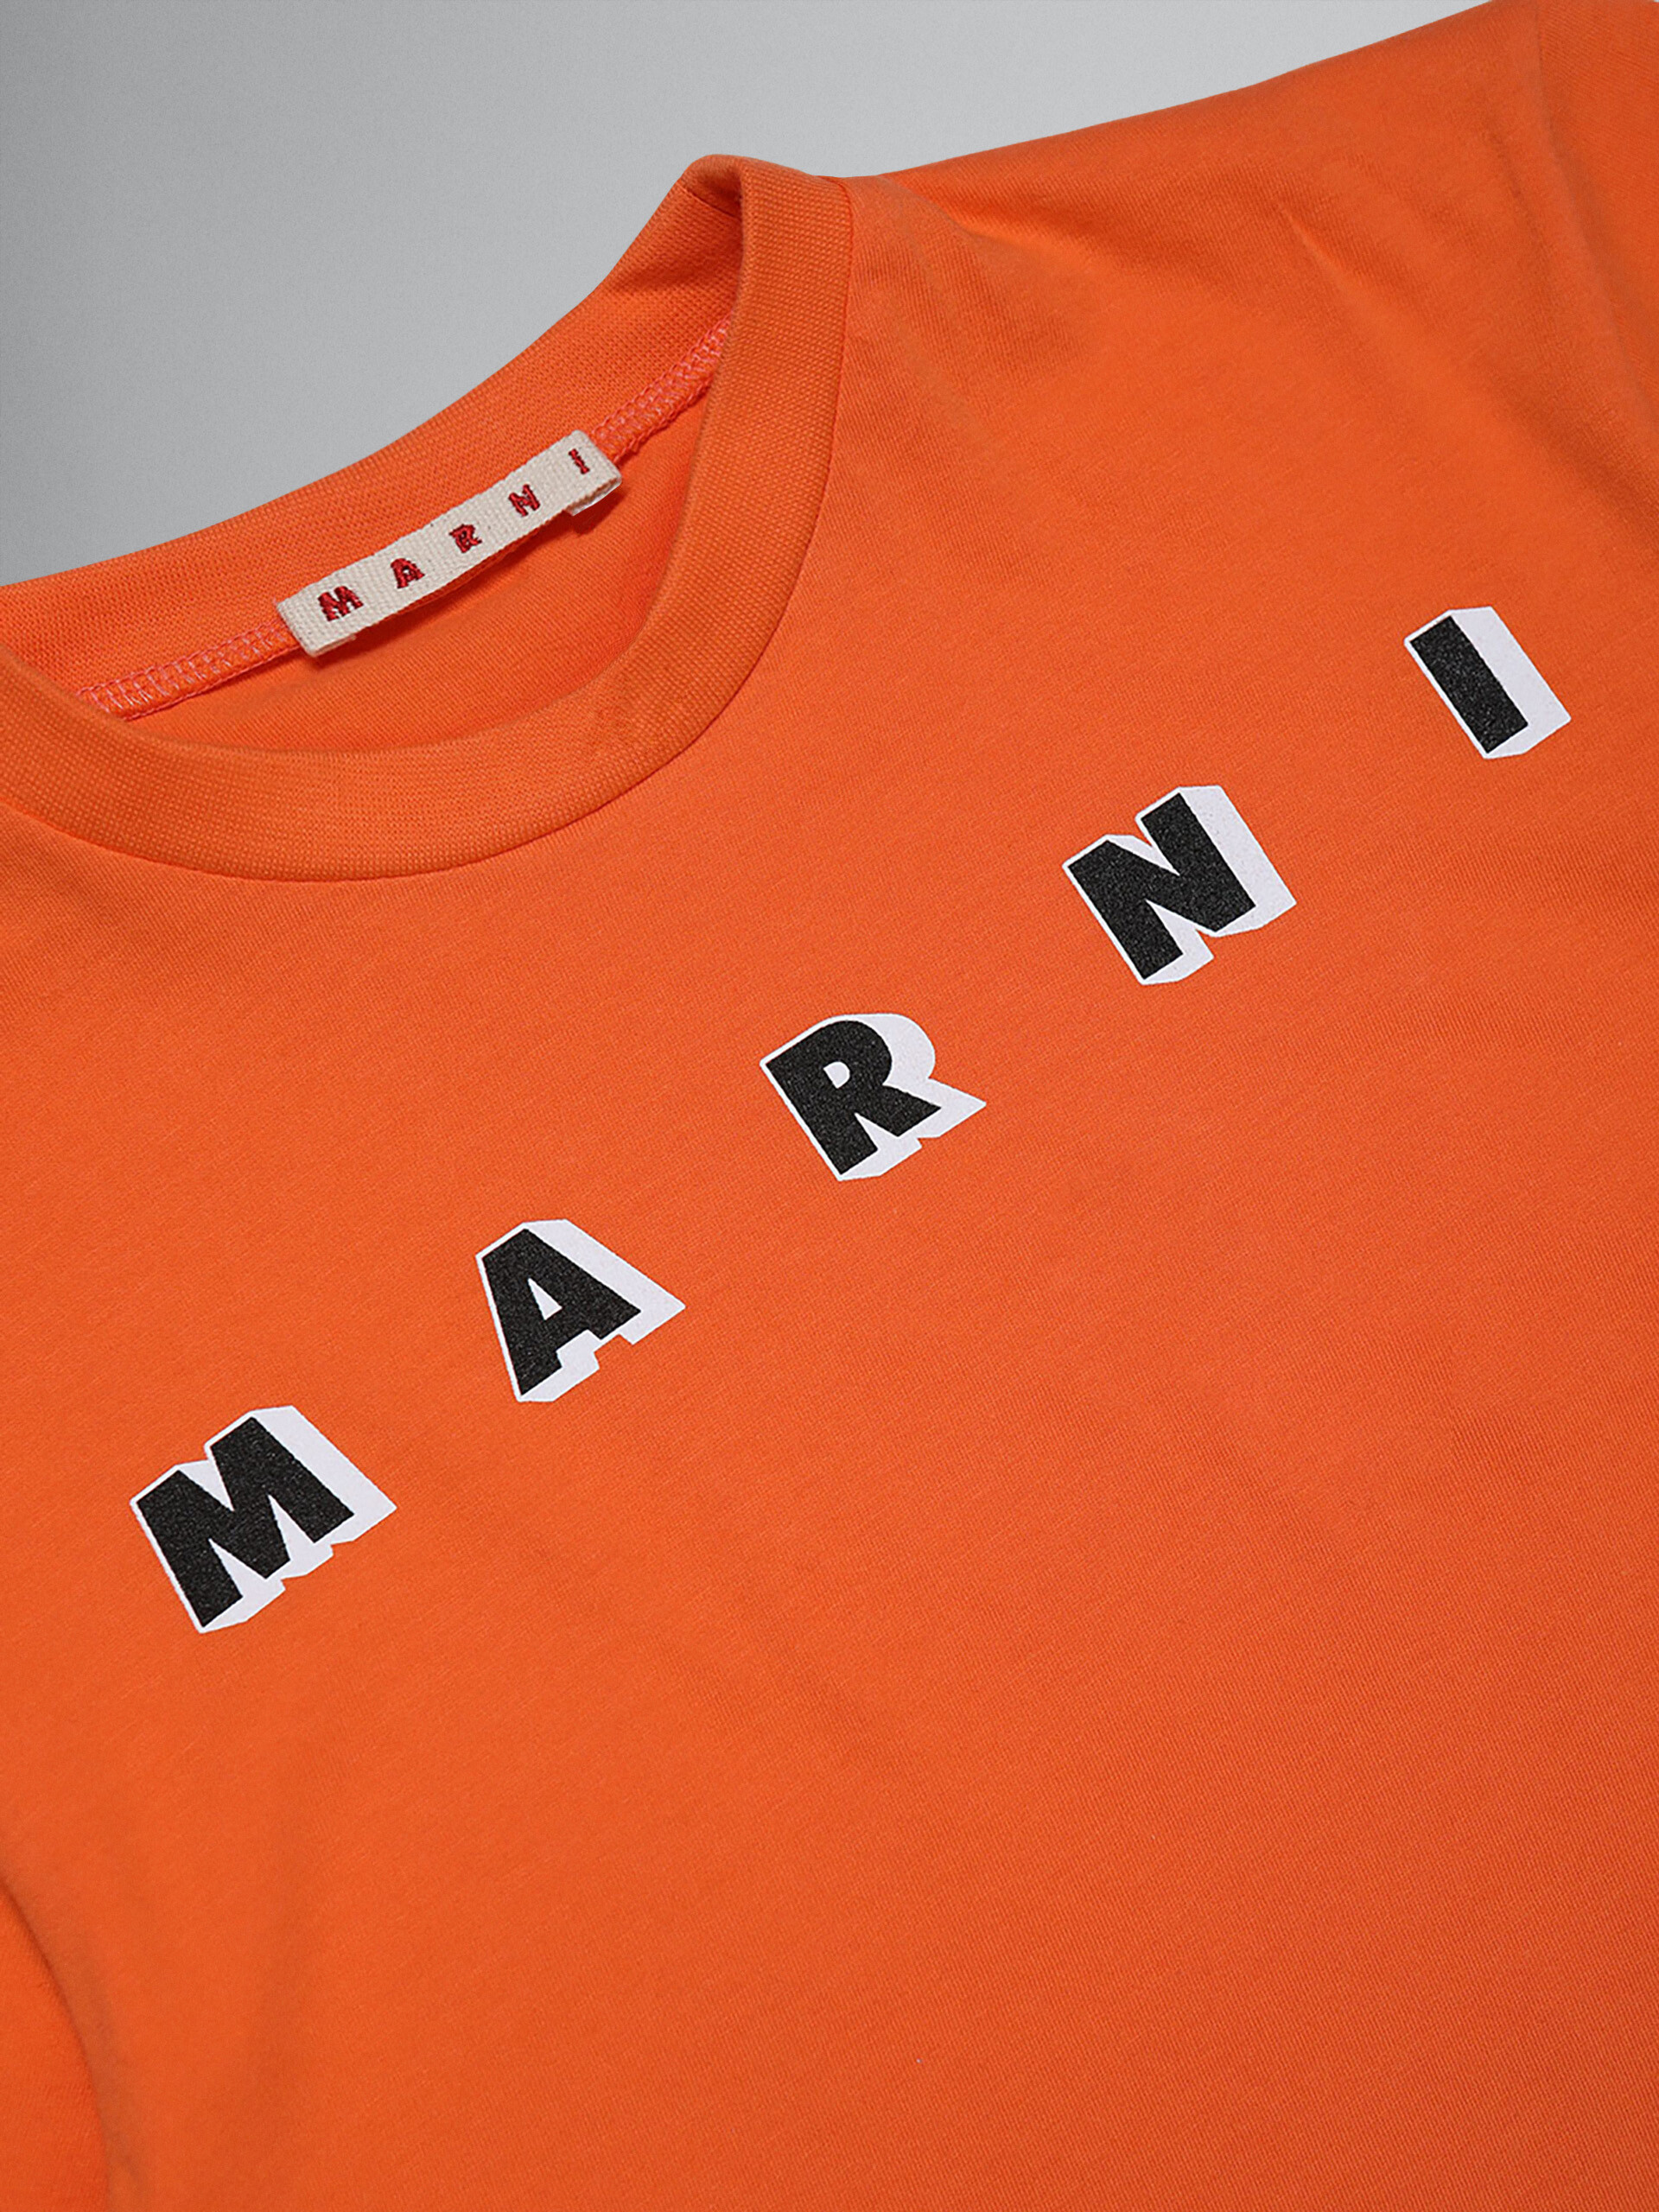 Camiseta de jersey de algodón naranja con logotipo - Camisetas - Image 3